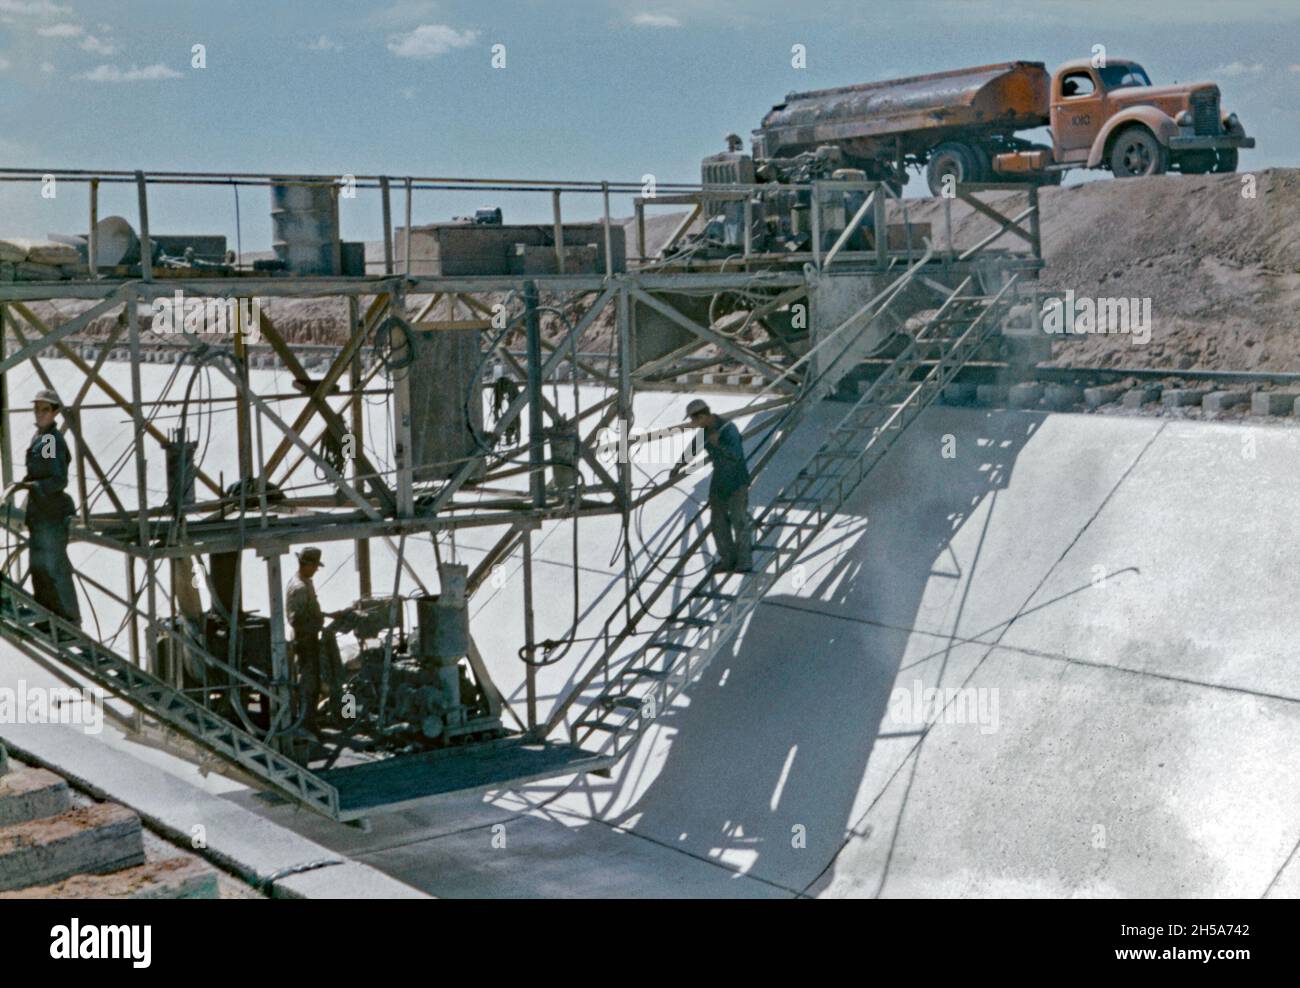 Lavori di costruzione sul canale di Wellton-Mohawk, vicino a Yuma, Arizona, USA nei primi anni '50. Qui i lavoratori di un carro su rotaie si muovono lungo il calcestruzzo appena posato. Stanno sfondando la base e i lati inclinati del canale per evitare che il materiale di rivestimento si indurisce troppo rapidamente e si rompa. Il Wellton-Mohawk Irrigation and Drenaggio District si trova nel sud-ovest dell'Arizona, ad est di Yuma, costruito tra il 1949 e il 1957. Permette l'irrigazione nella valle inferiore di Gila con acqua dal fiume Colorado attraverso il canale di Gila al canale di Wellton-Mohawk, dove è pompato circa 160 piedi alle acque headwaters Foto Stock